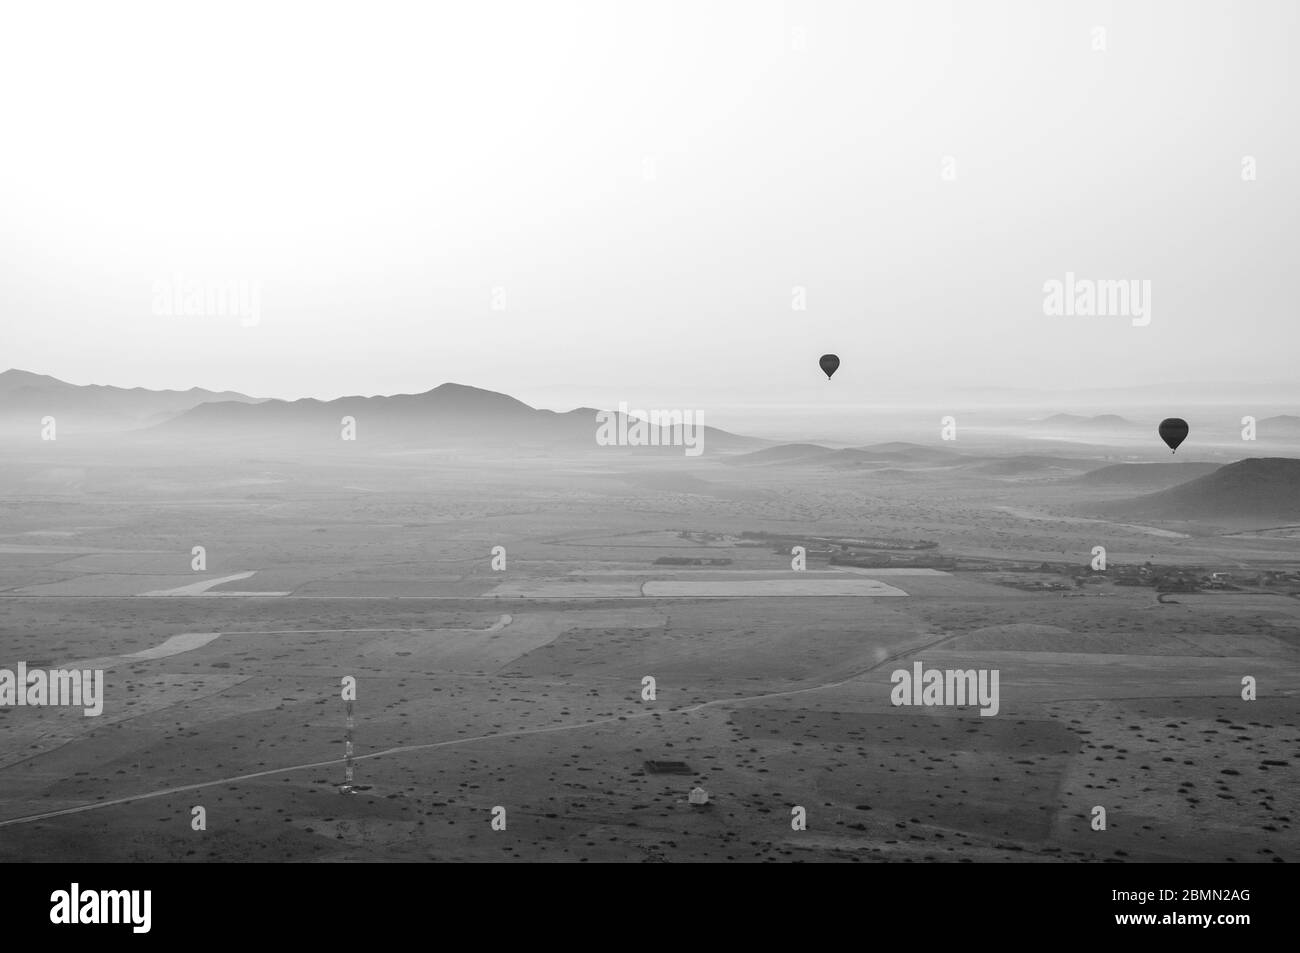 Schwarz-Weiß-Bild im Retro-Stil von einem Heißluftballon über Marokko. Zwei weitere Ballone in der Luft über einer wunderschönen Bergkette Stockfoto